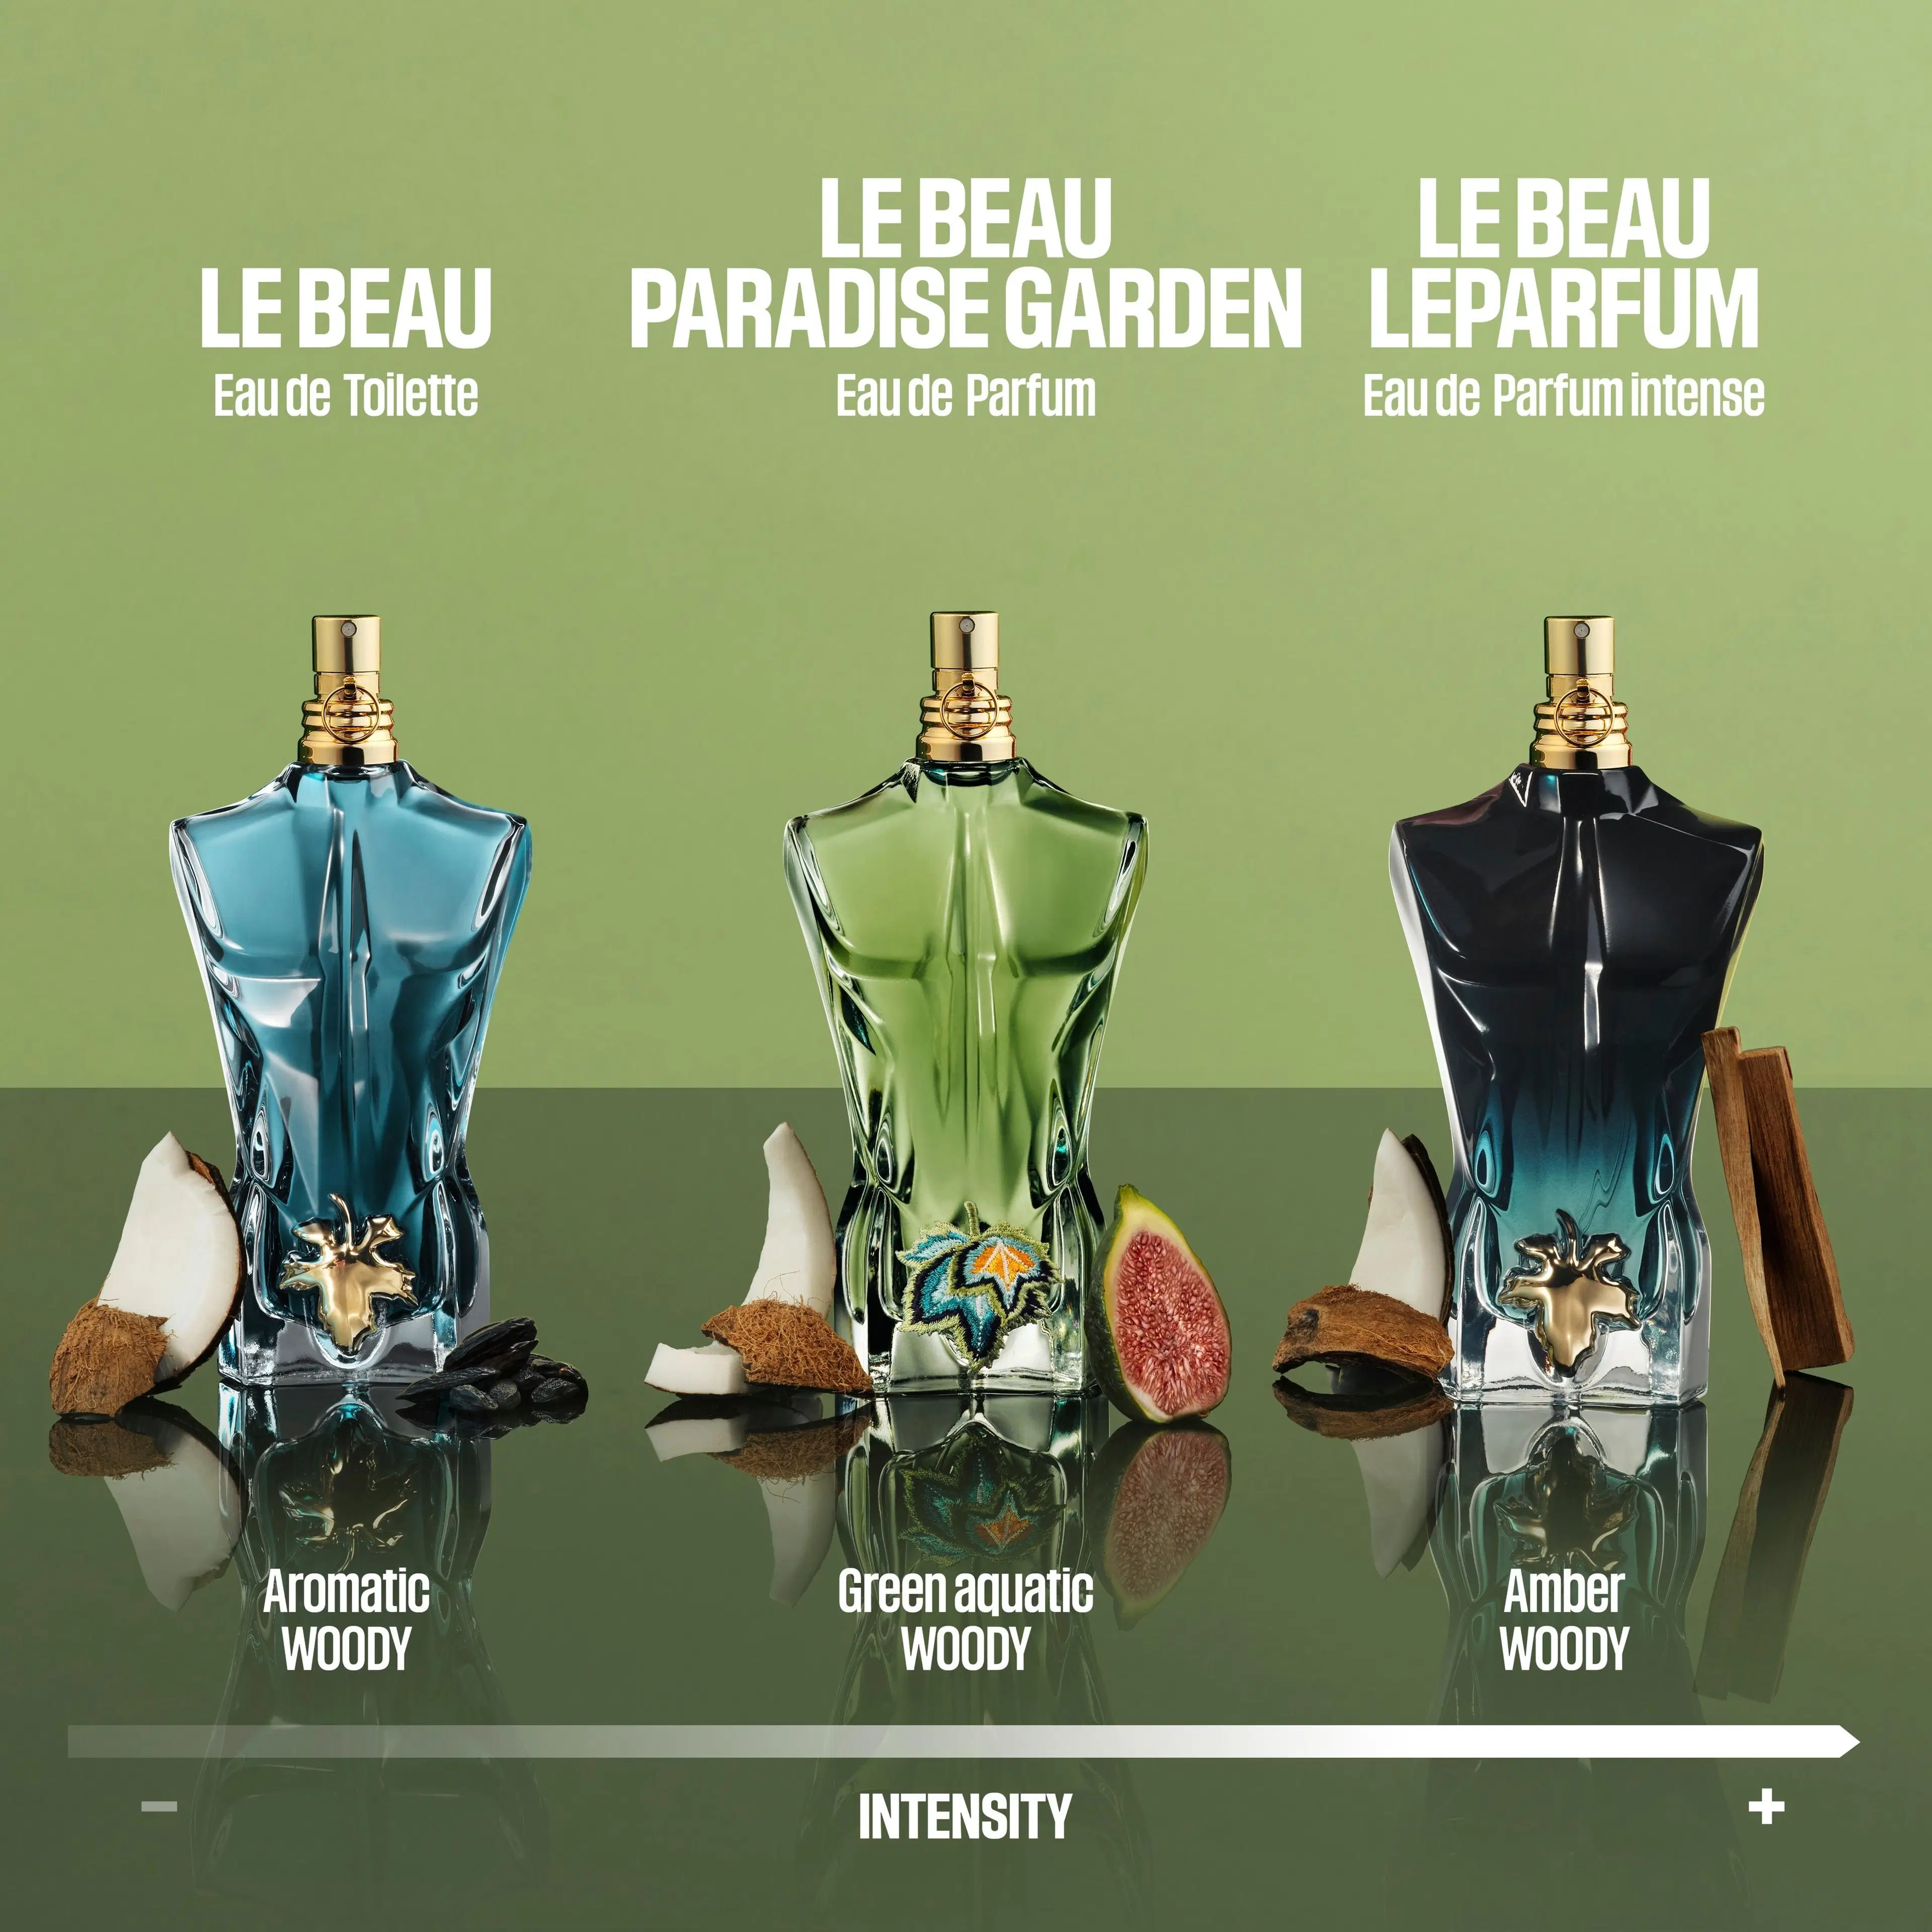 Jean Paul Gaultier Le Beau Le Parfum tuoksu 75 ml